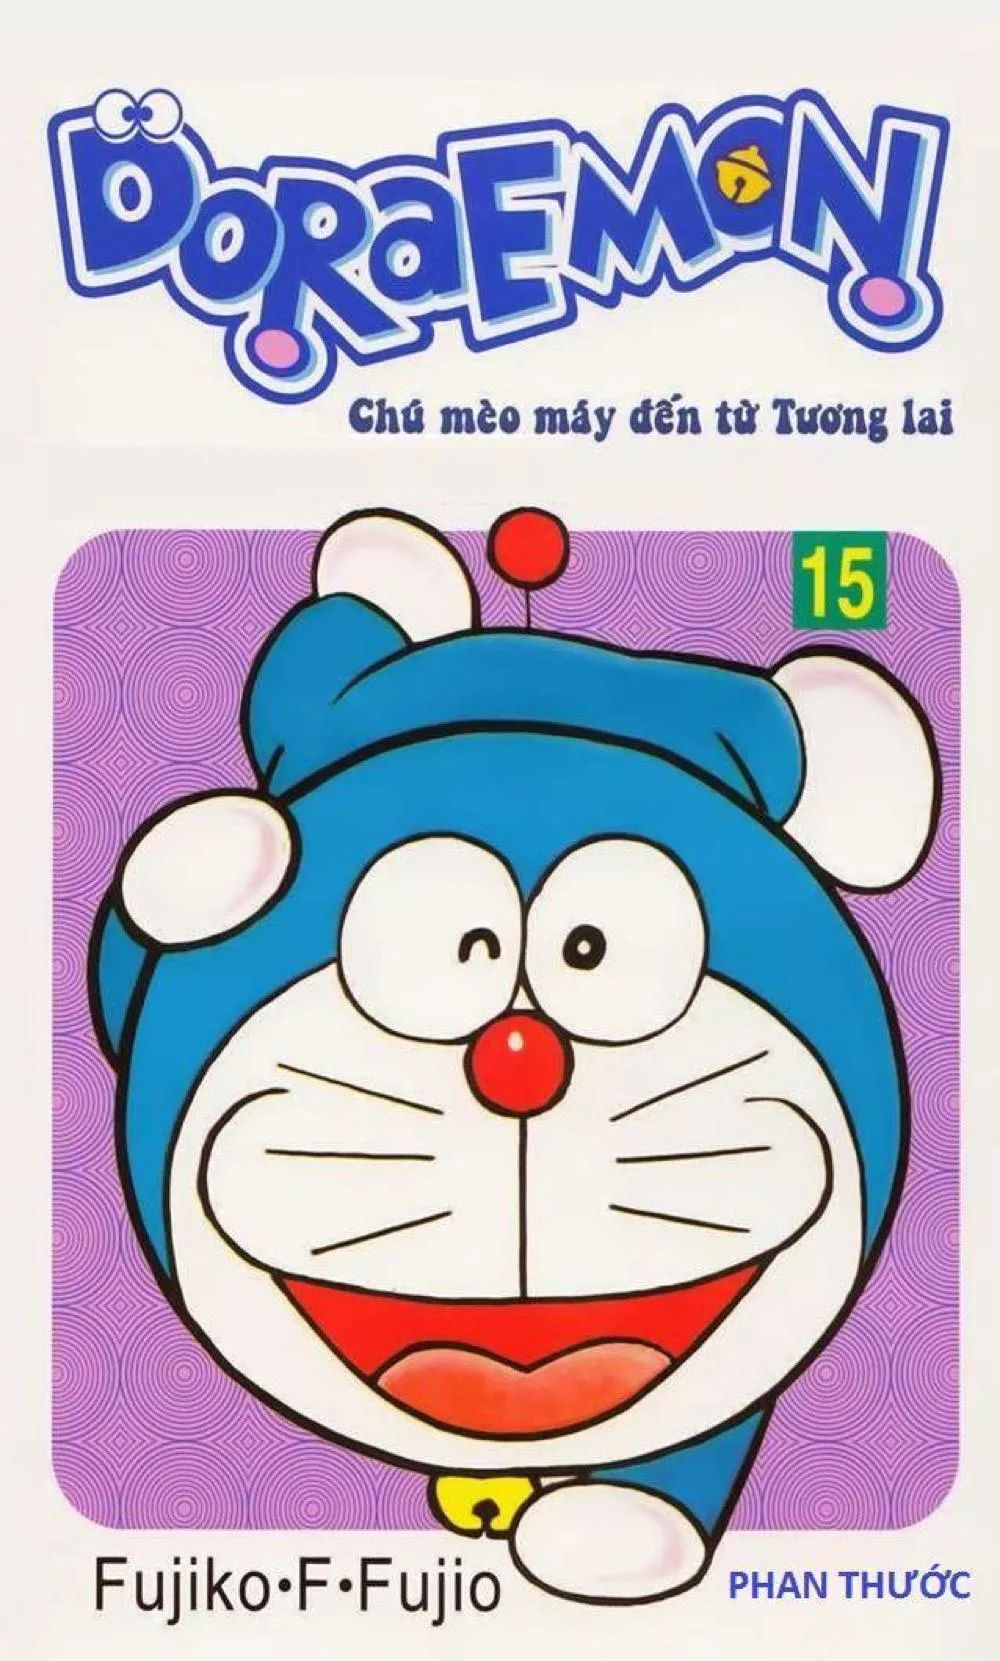 Tập vẽ Doraemon: Hãy trở thành một họa sĩ giỏi như Nobita với Tập vẽ Doraemon đầy màu sắc và thú vị. Tập vẽ này sẽ giúp bạn học cách vẽ những nhân vật đáng yêu và kỳ diệu trong loạt phim hoạt hình nổi tiếng này.